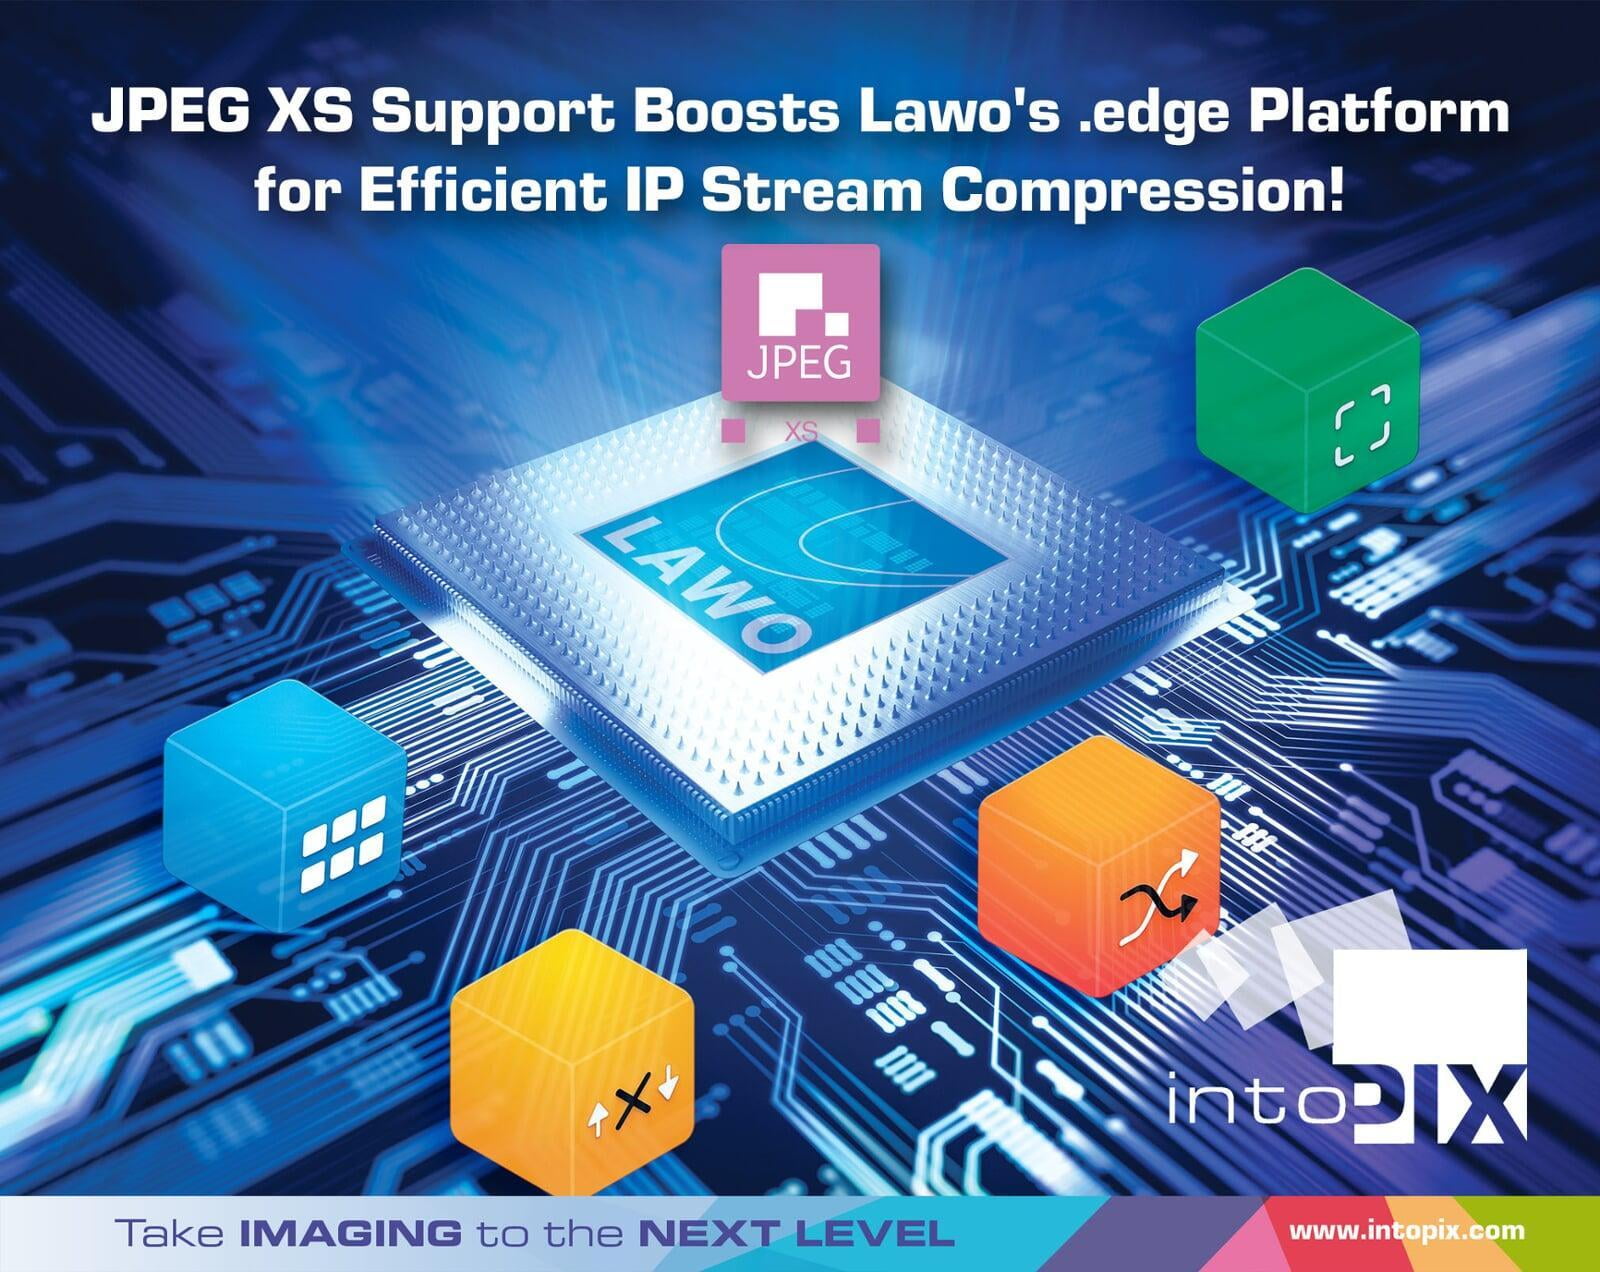 Lawo社とintoPIXが提携し、IBC 2023でエッジ・コンピュートJPEG XS サポートを提供します。